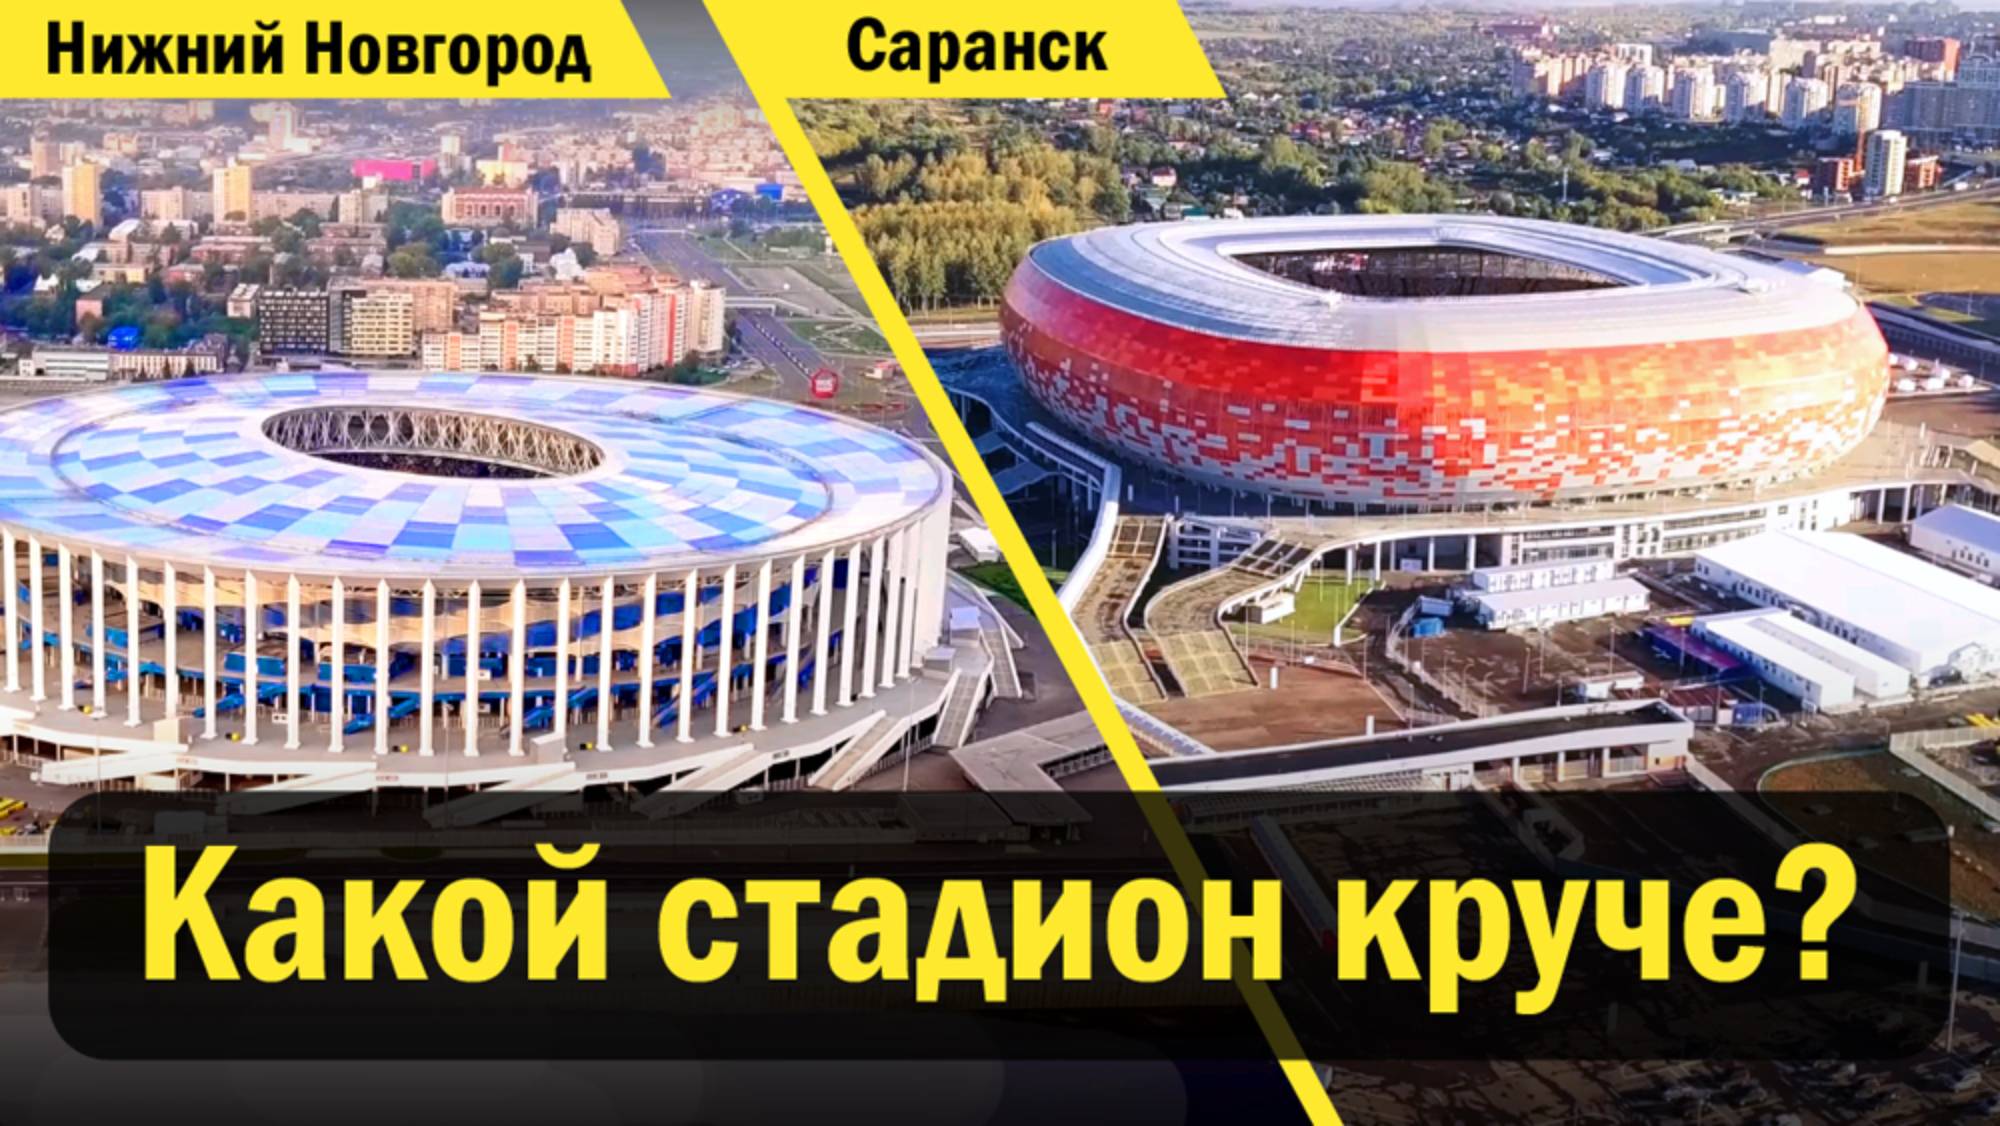 Нижний Новгород и Саранск. Какой стадион круче?